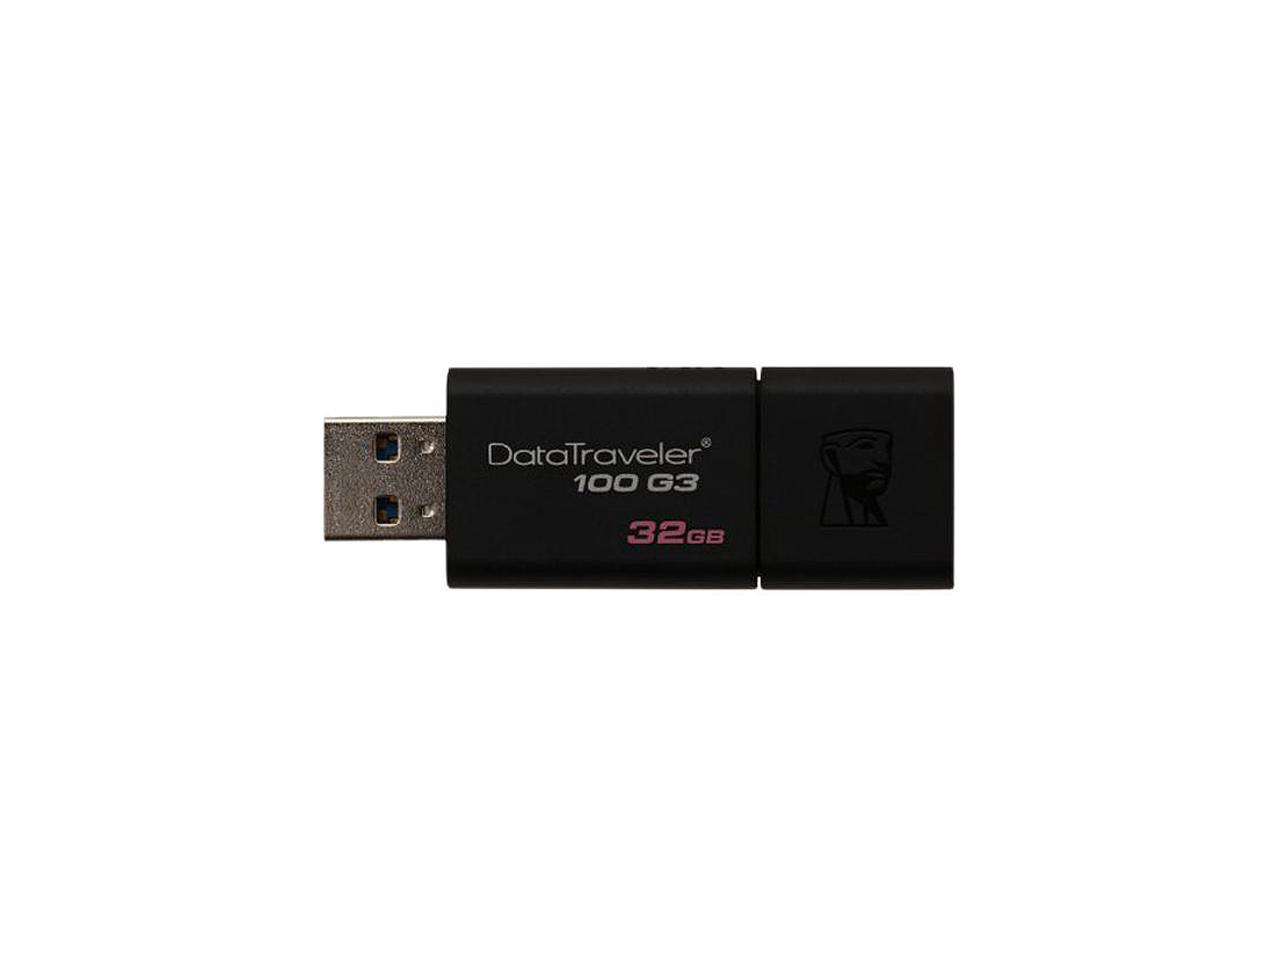 sphere Old man University Kingston 32GB DataTraveler 100 G3 USB 3.0 Flash Drive (DT100G3/32GBCR) -  Newegg.com